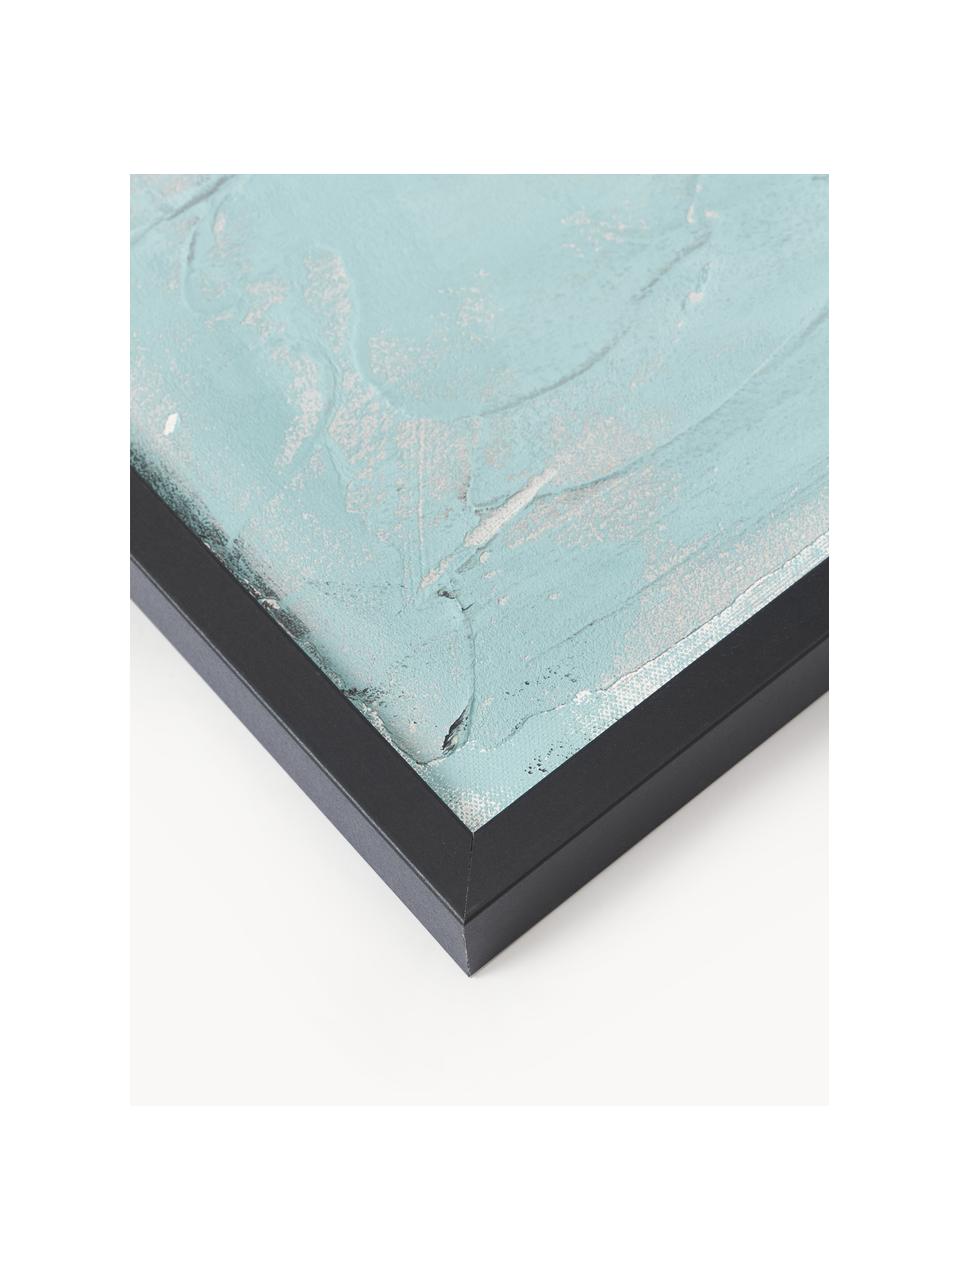 Impression sur toile peinte à la main encadrée Simple Living, Turquoise, larg. 92 x haut. 120 cm